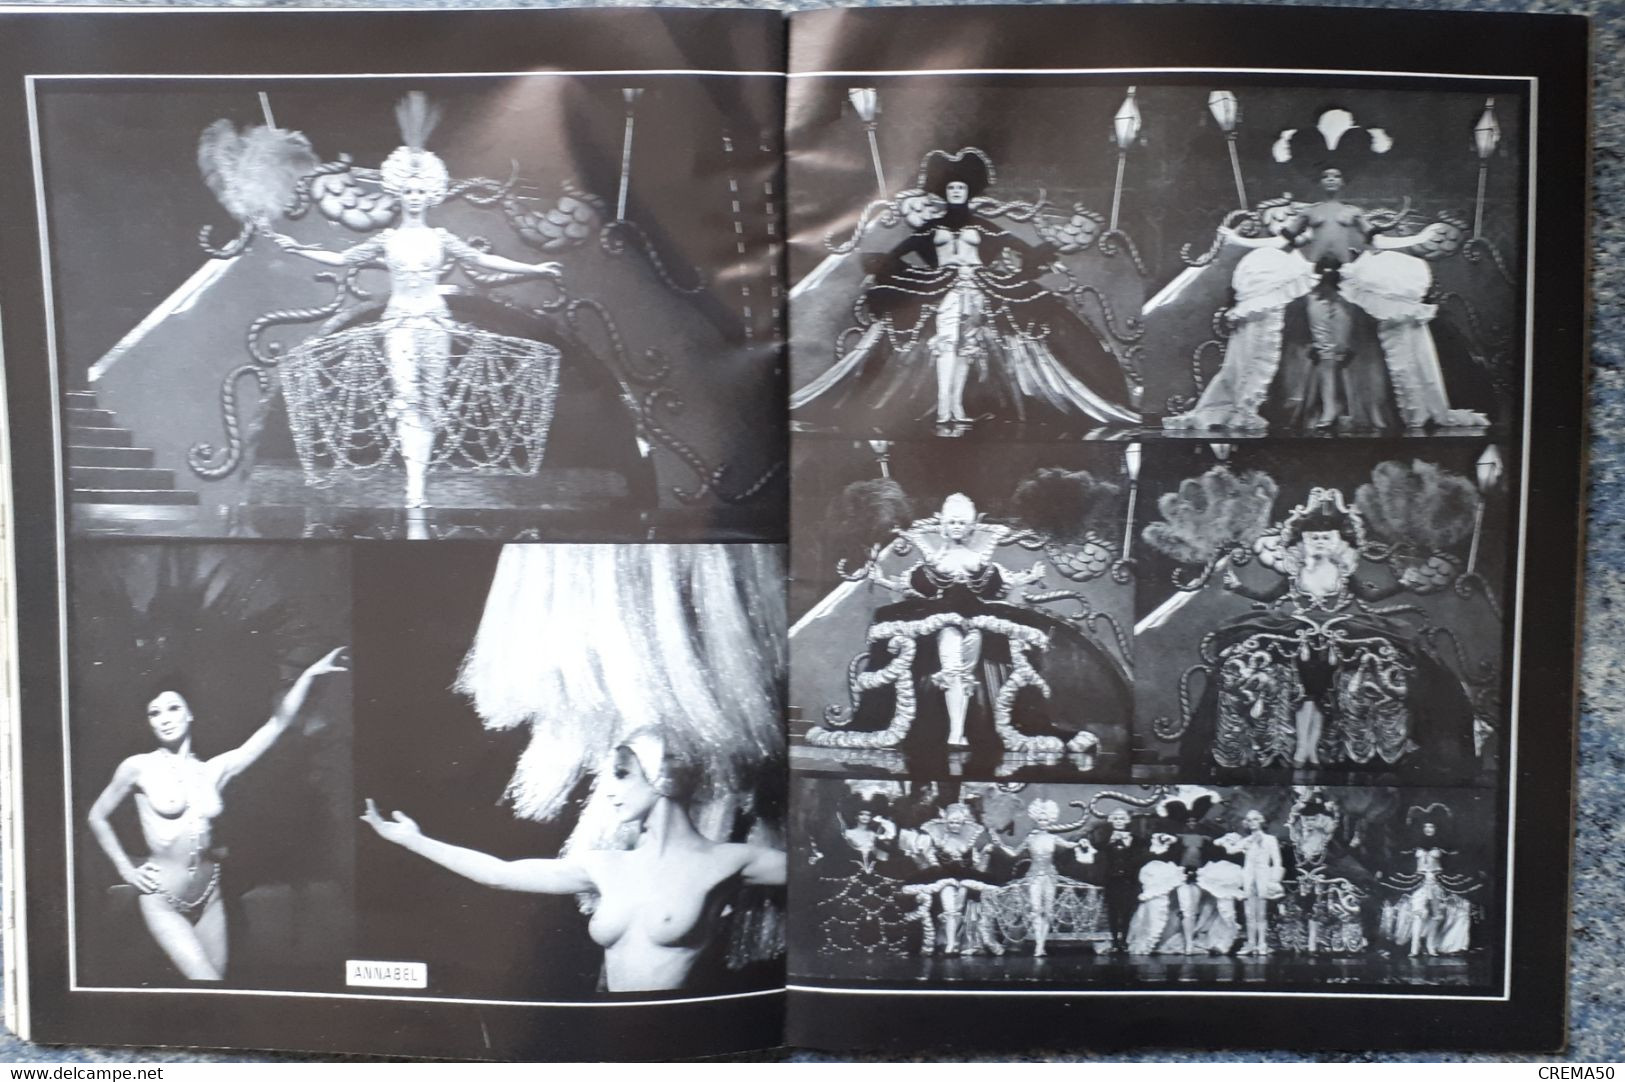 Rare Programme, CASINO de PARIS -  ZIZI JE T'AIME -  Lisette MALDOR. Yves St Laurent, femmes nues - Vers 1970